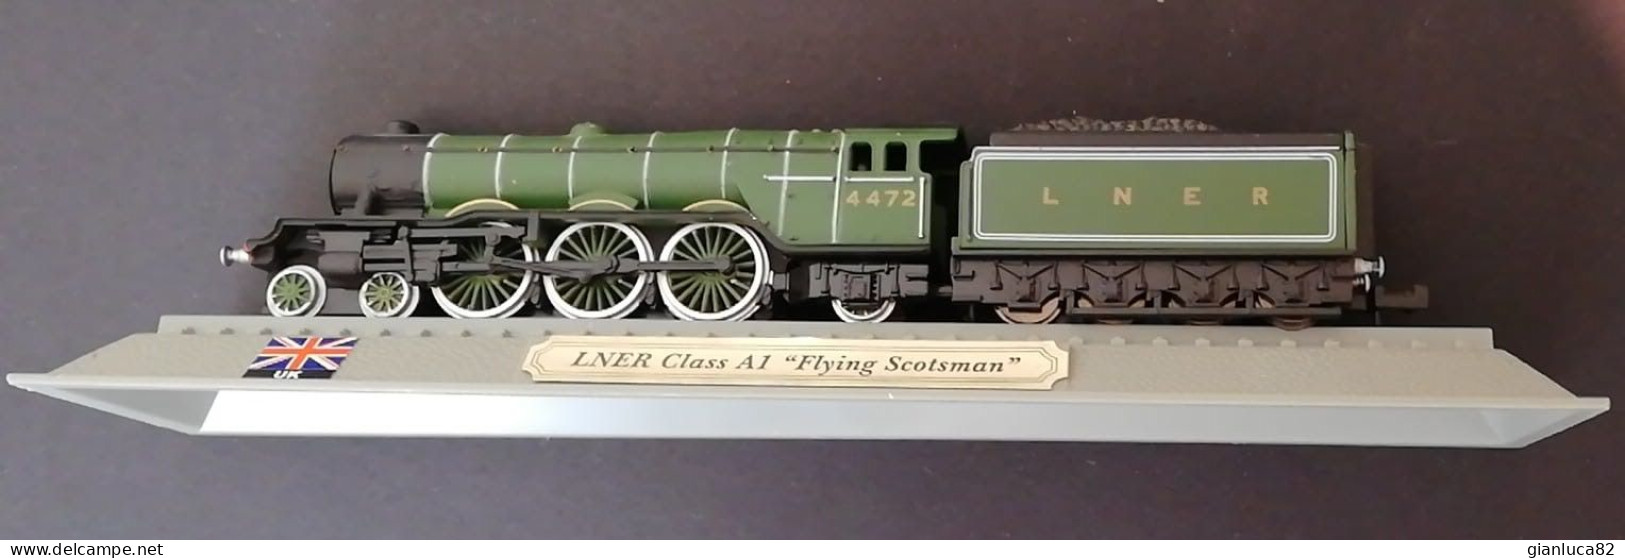 Locomotiva LNER Class A1 Flying Scotsman Come Nuovo (342) Come Da Foto Dimensioni Modellino 14,5x2,5x2 Cm - Locomotives